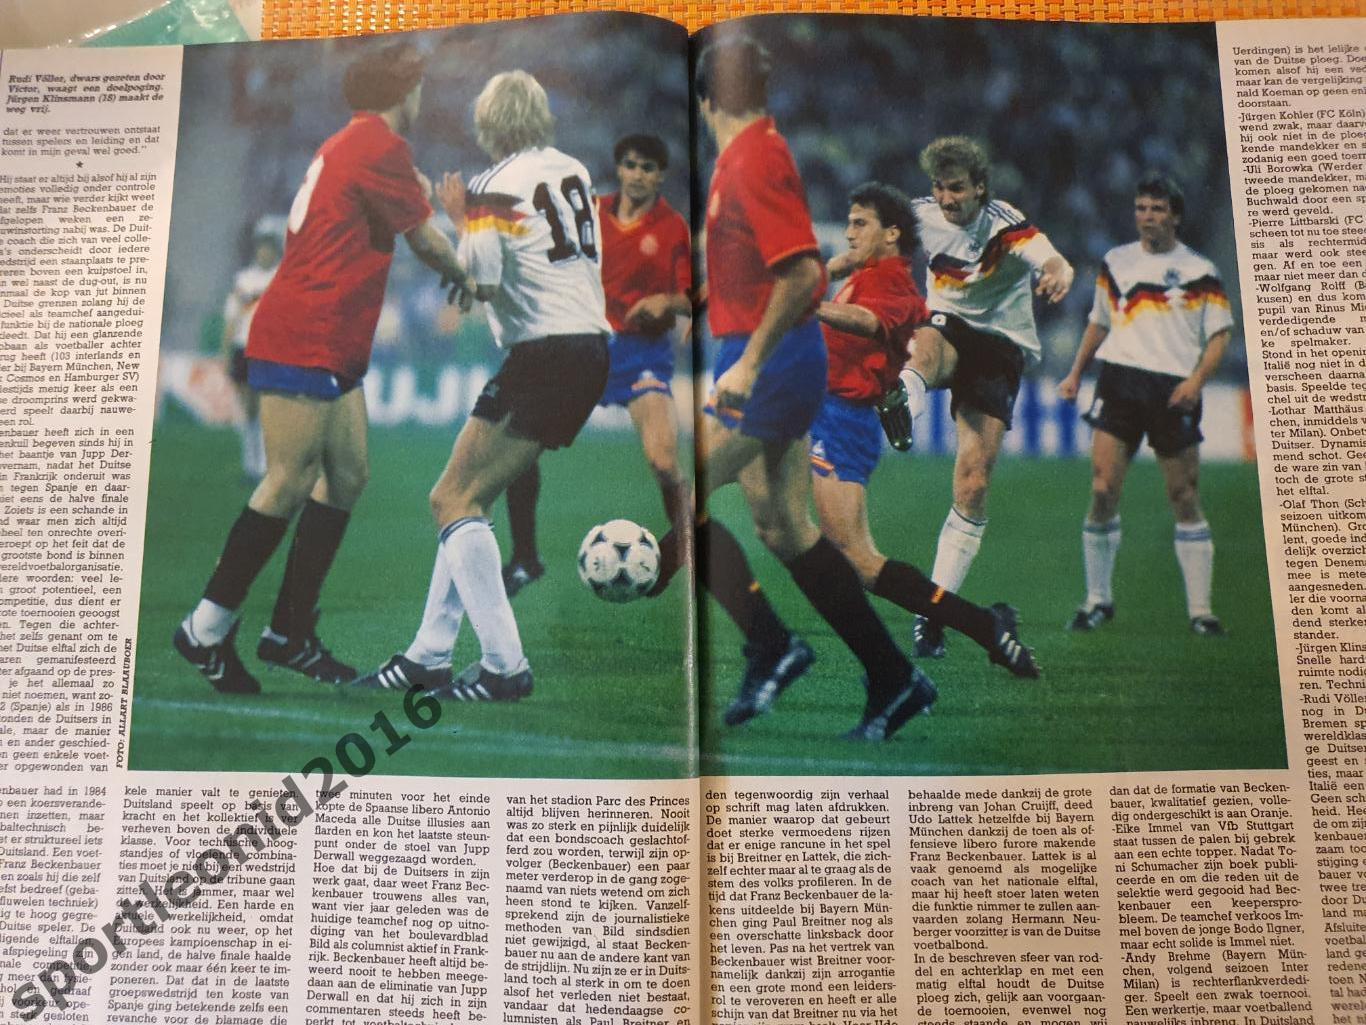 Voetbal International 1988+87.10 топ выпусков.В том числе И ВСЕ к ЧE-88.7 1